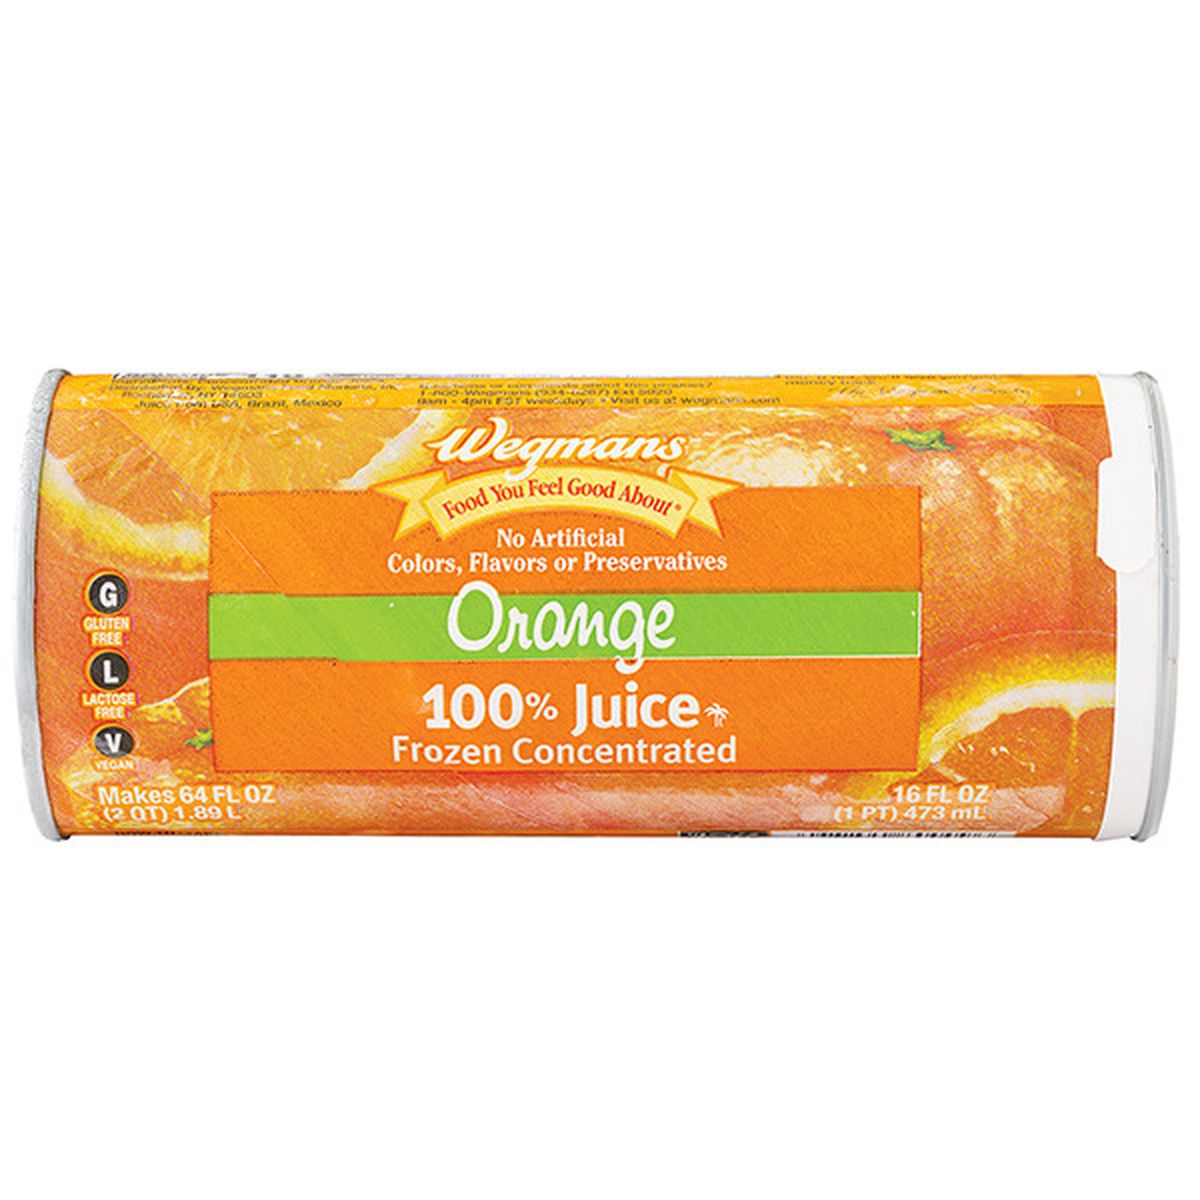 Calories in Wegmans 100% Juice, Orange, Frozen Concentrated